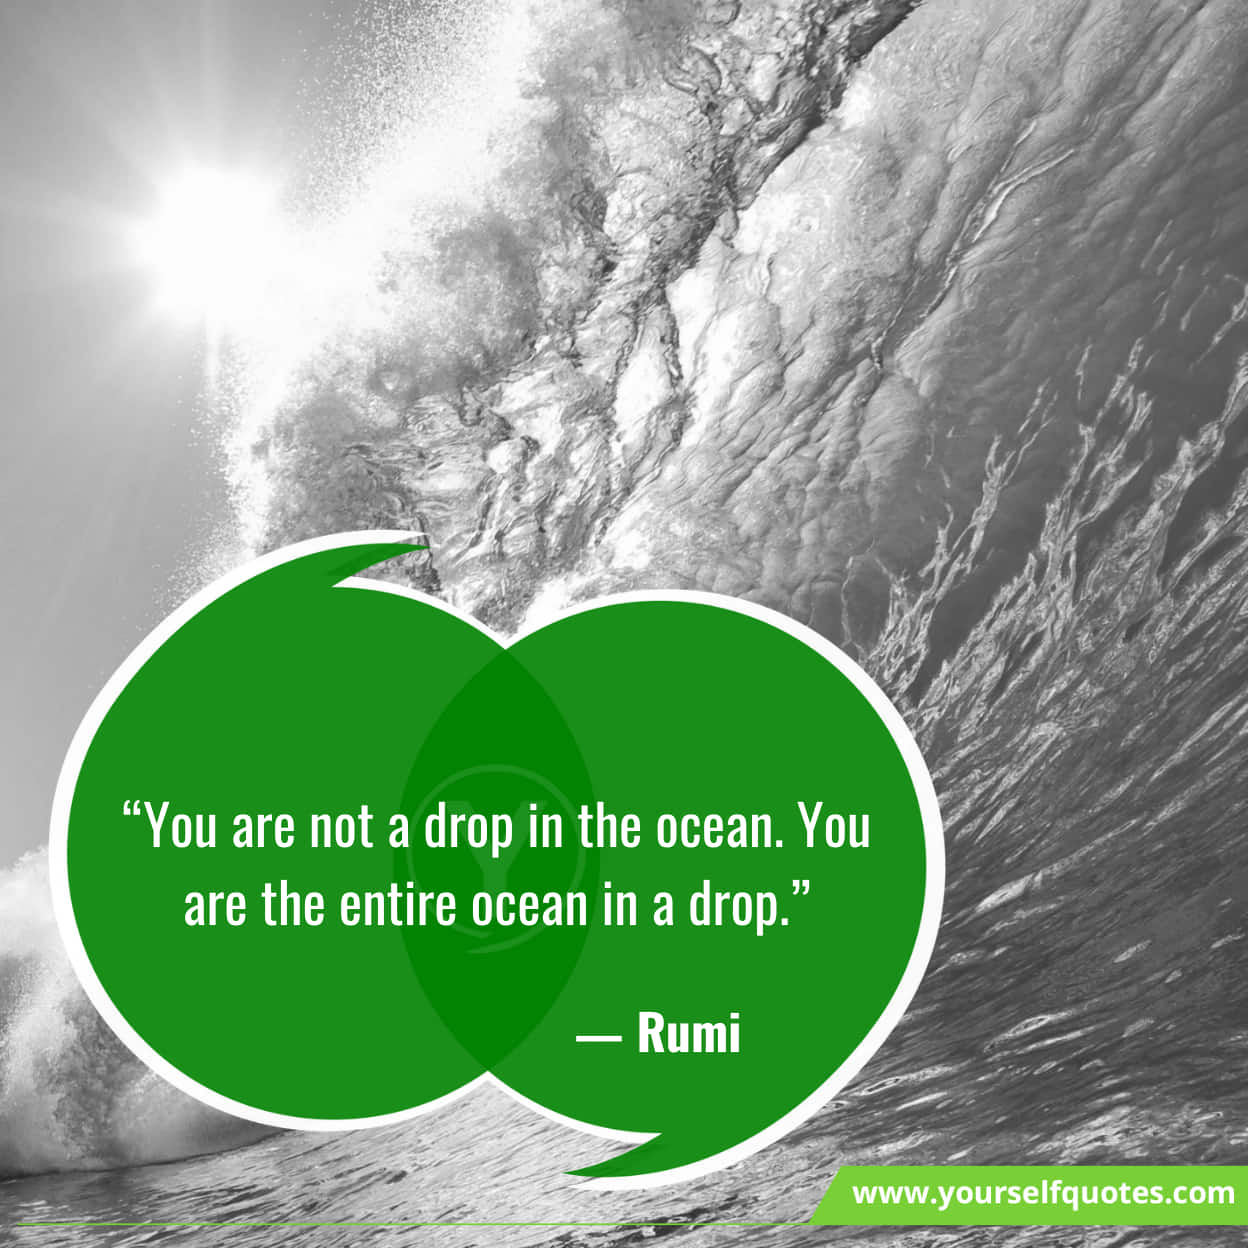 Rumi Motivational Quotes